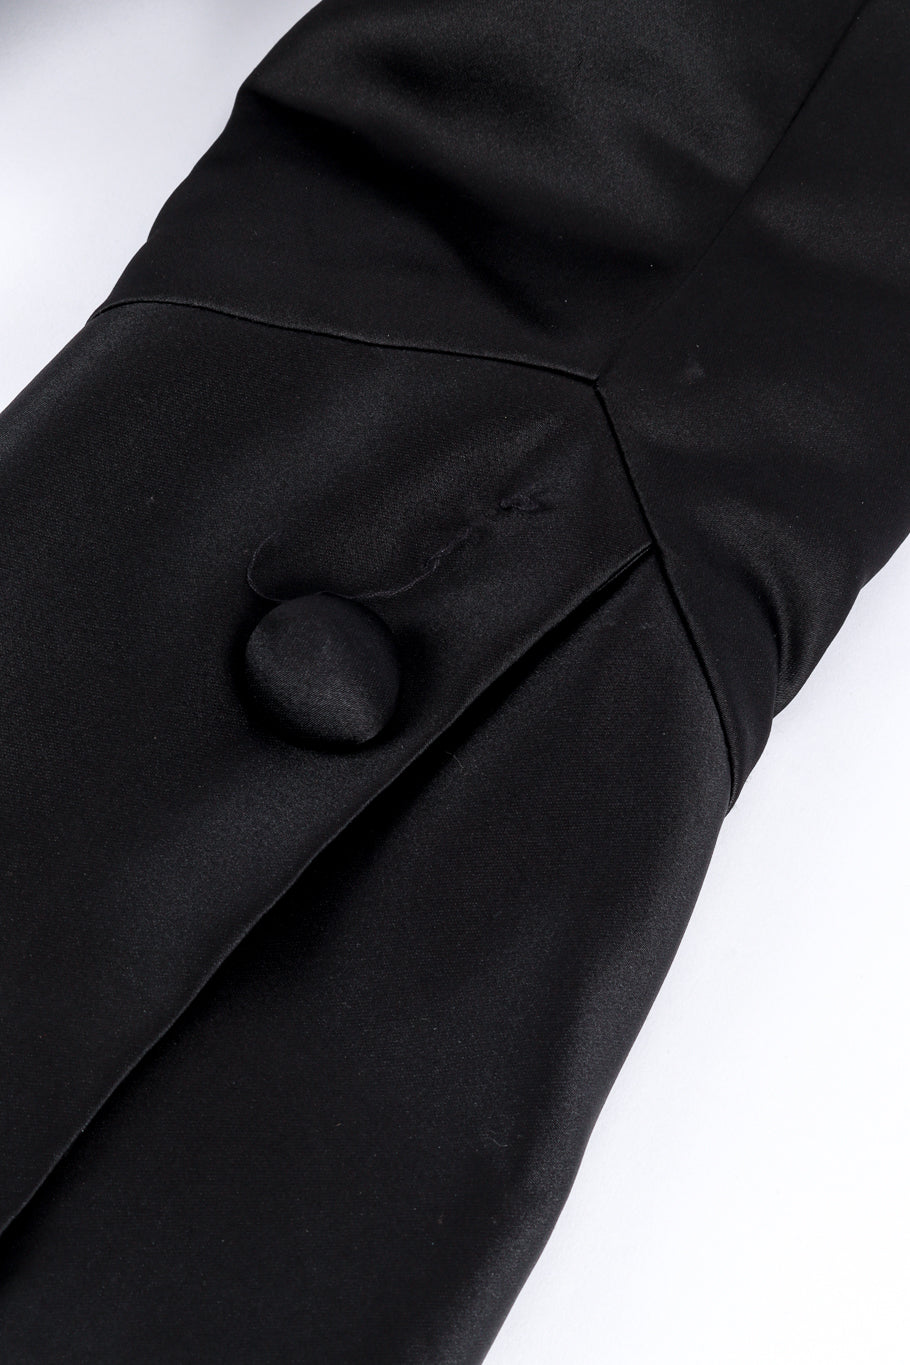 Vintage Antonio Garcia Pointed Bolero Jacket missing button closeup @recess la